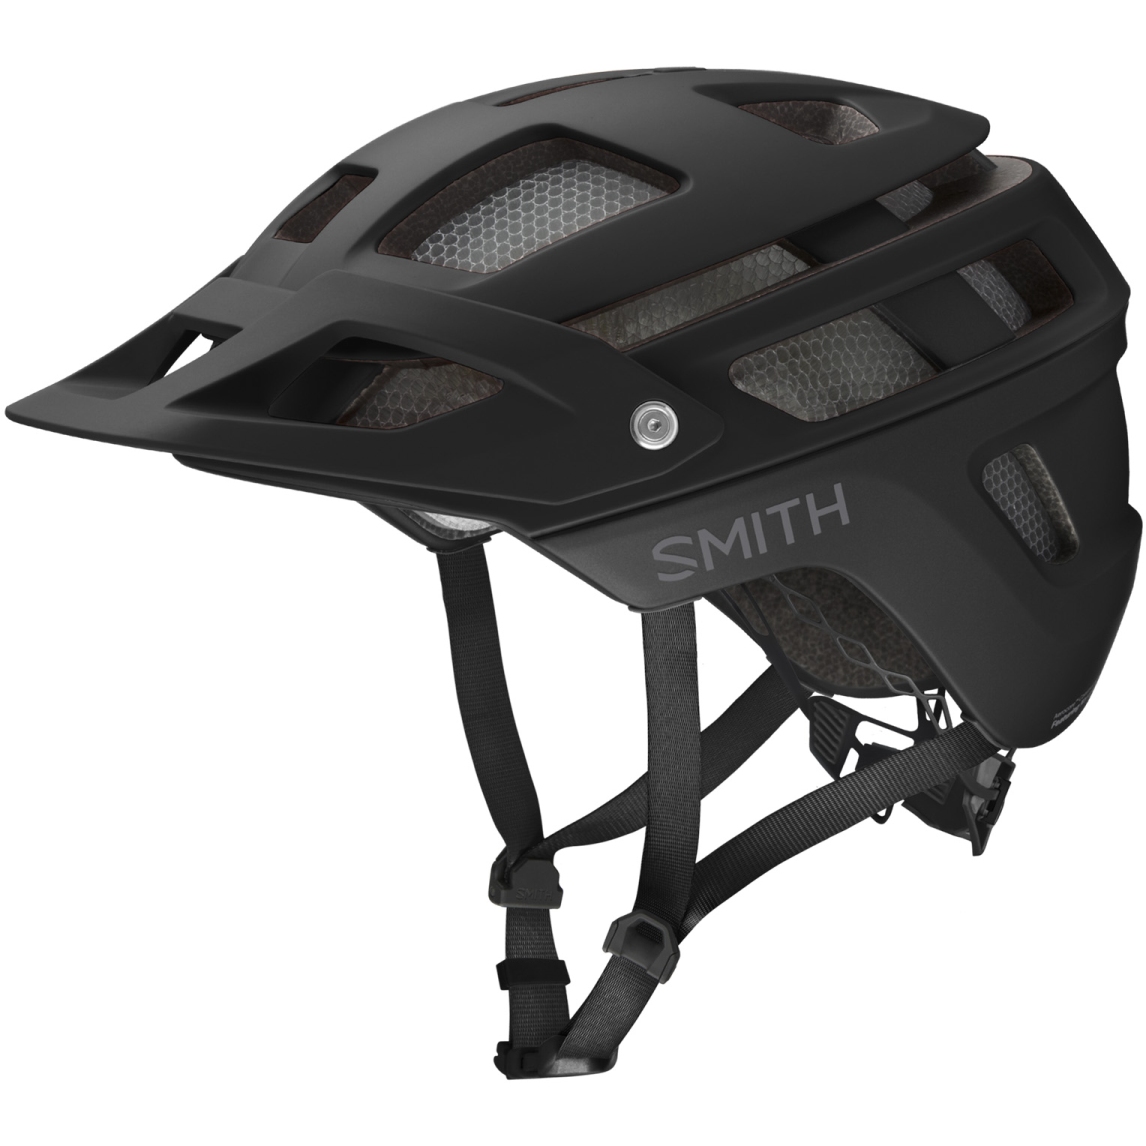 Productfoto van Smith Forefront 2 MIPS MTB Helmet - Matte Black